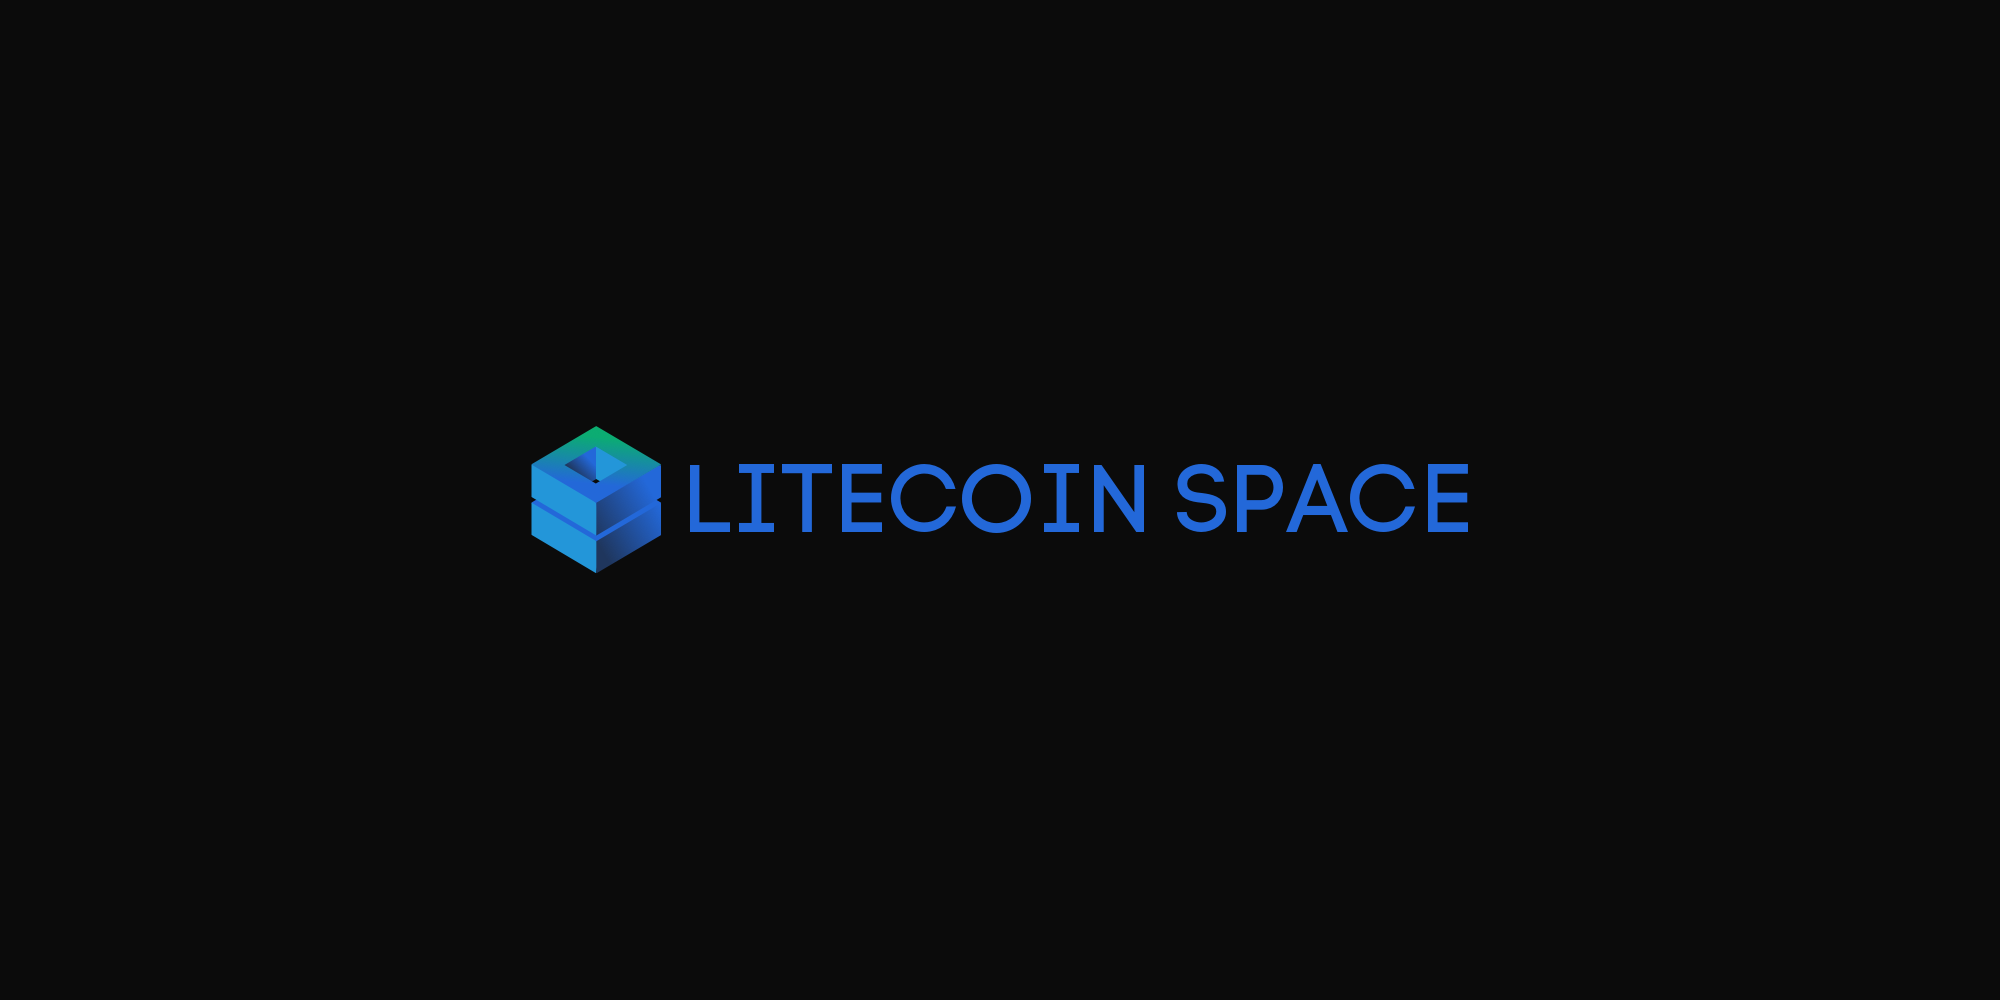 Litecoin Space - Your Gateway to Explore Litecoin